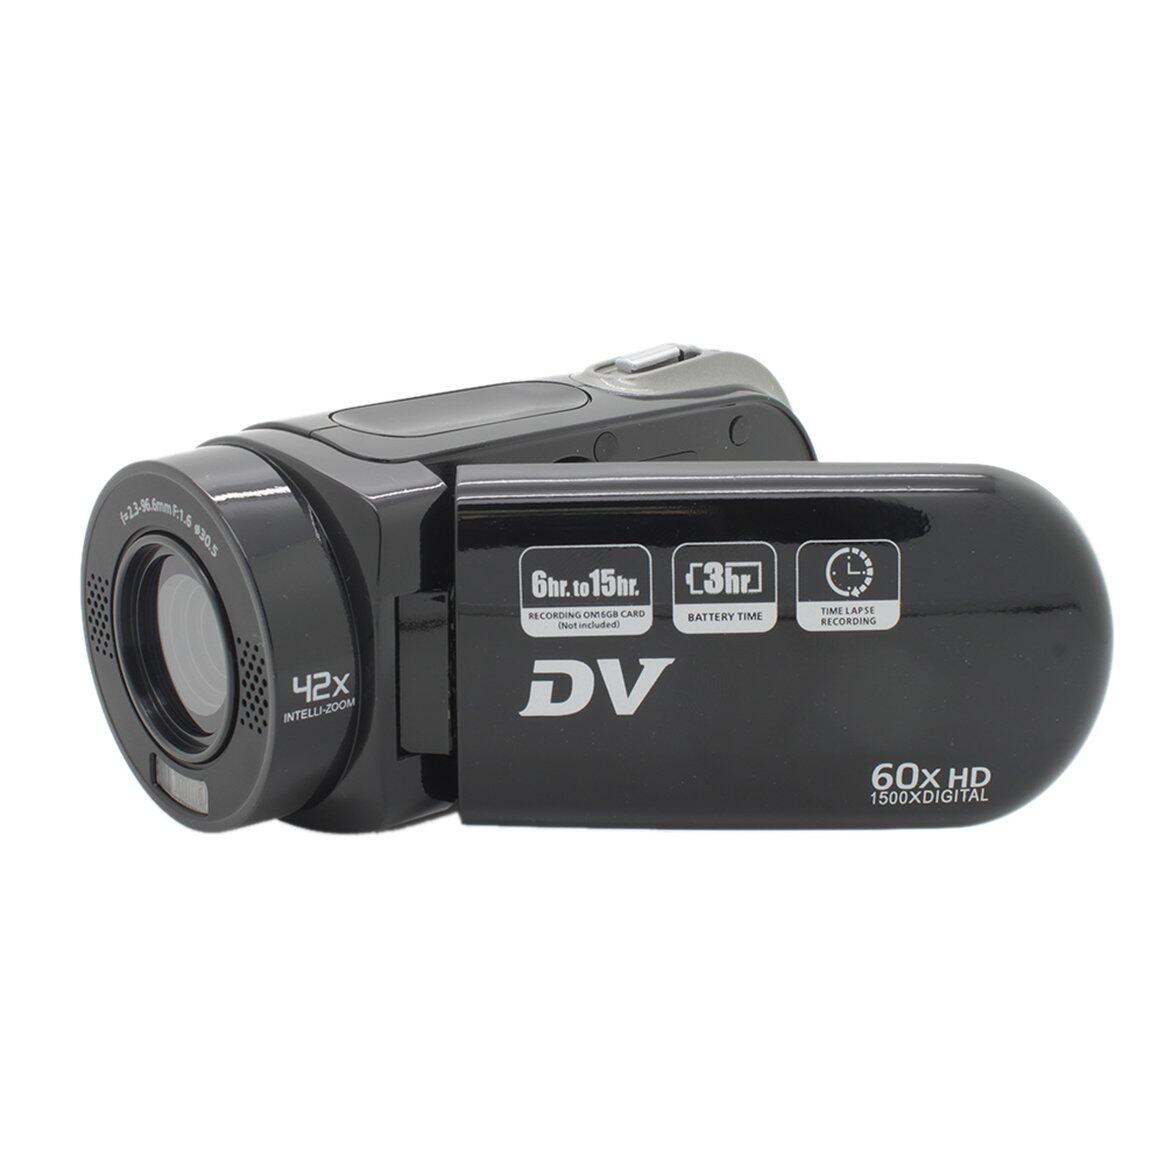 ราคาดีที่สุดกล้องดิจิตอล16MP Ultra กล้อง HD กล้องดิจิตอลกล้อง SLR ซูมภาพแบบดิจิทัล4เท่า